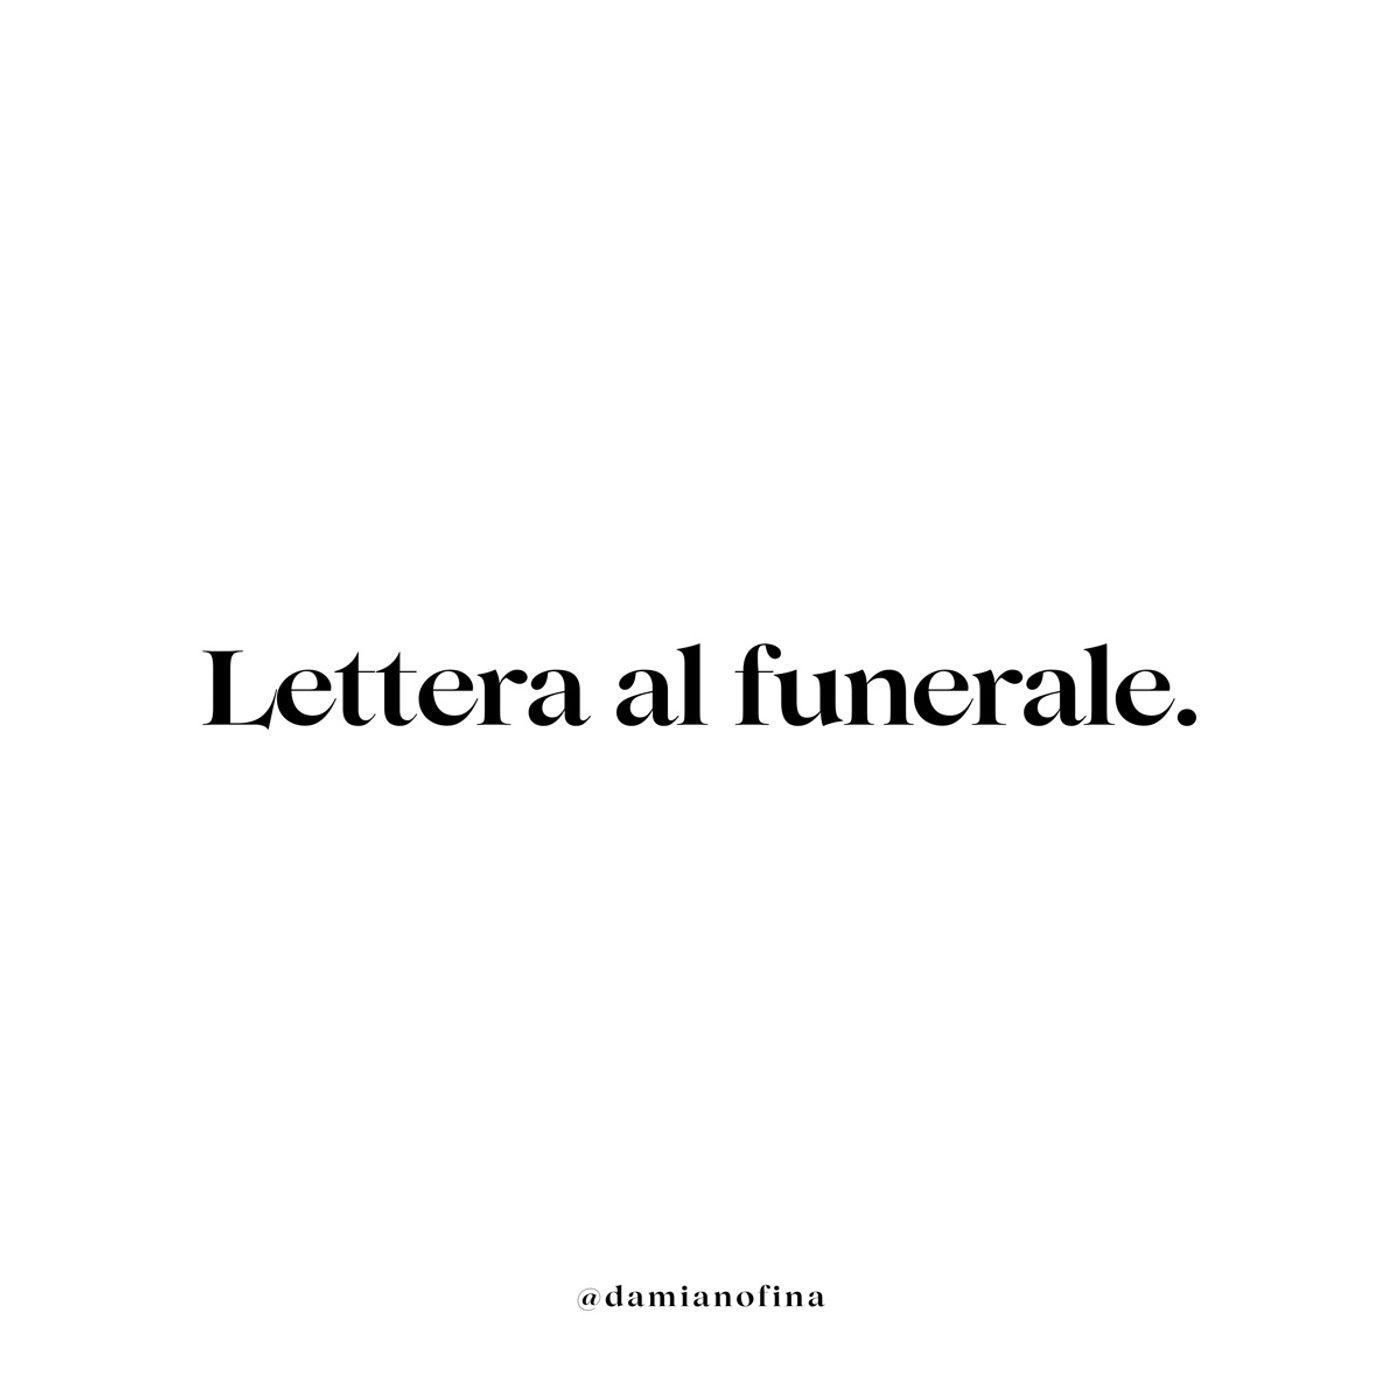 Lettera al funerale